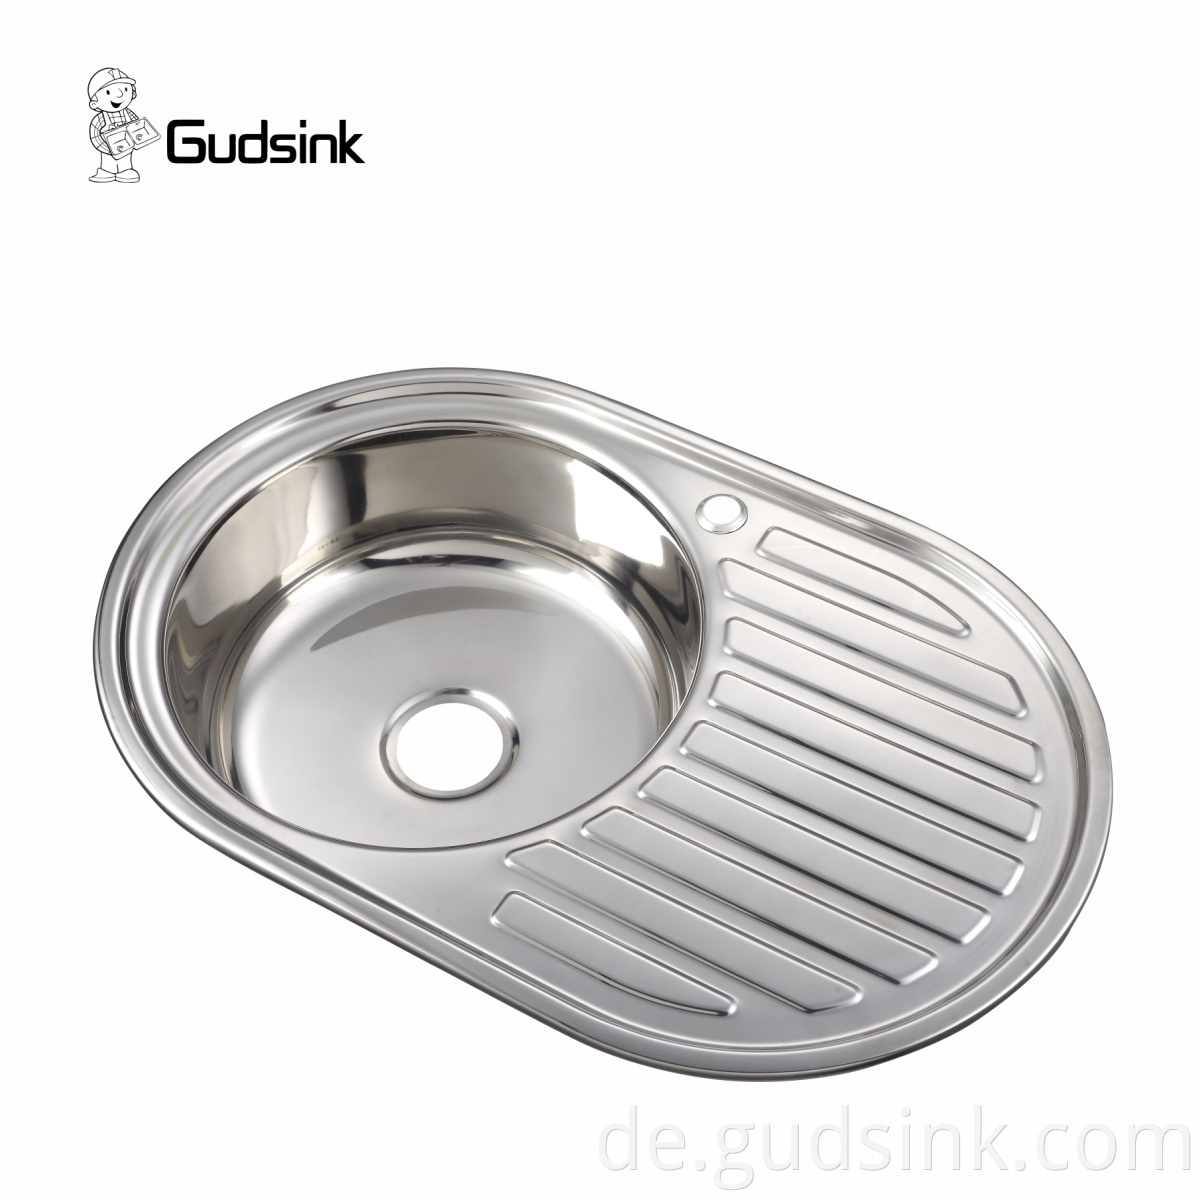 14 gauge stainless steel sink